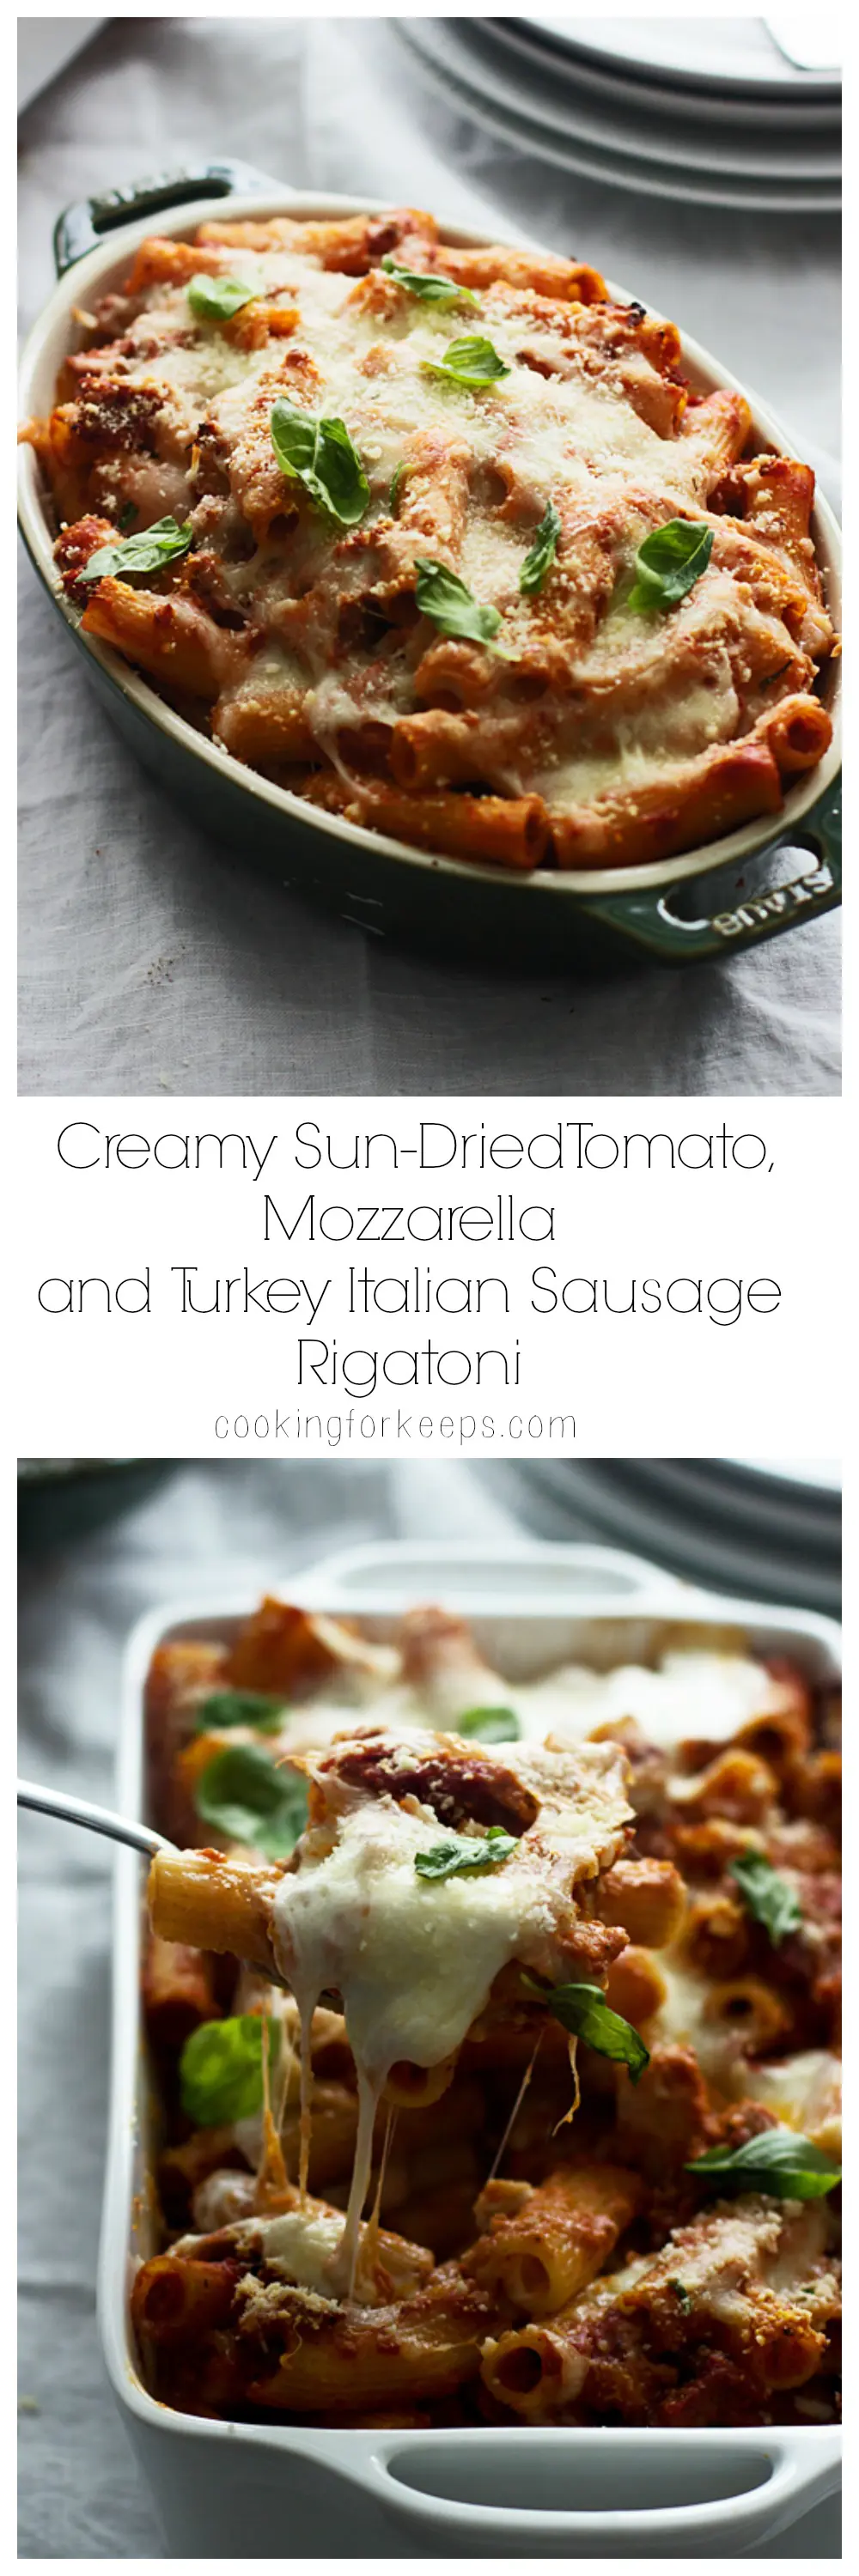 Creamy Sun-Dried Tomato, Mozzarella and Turkey Italian Sausage Rigatoni